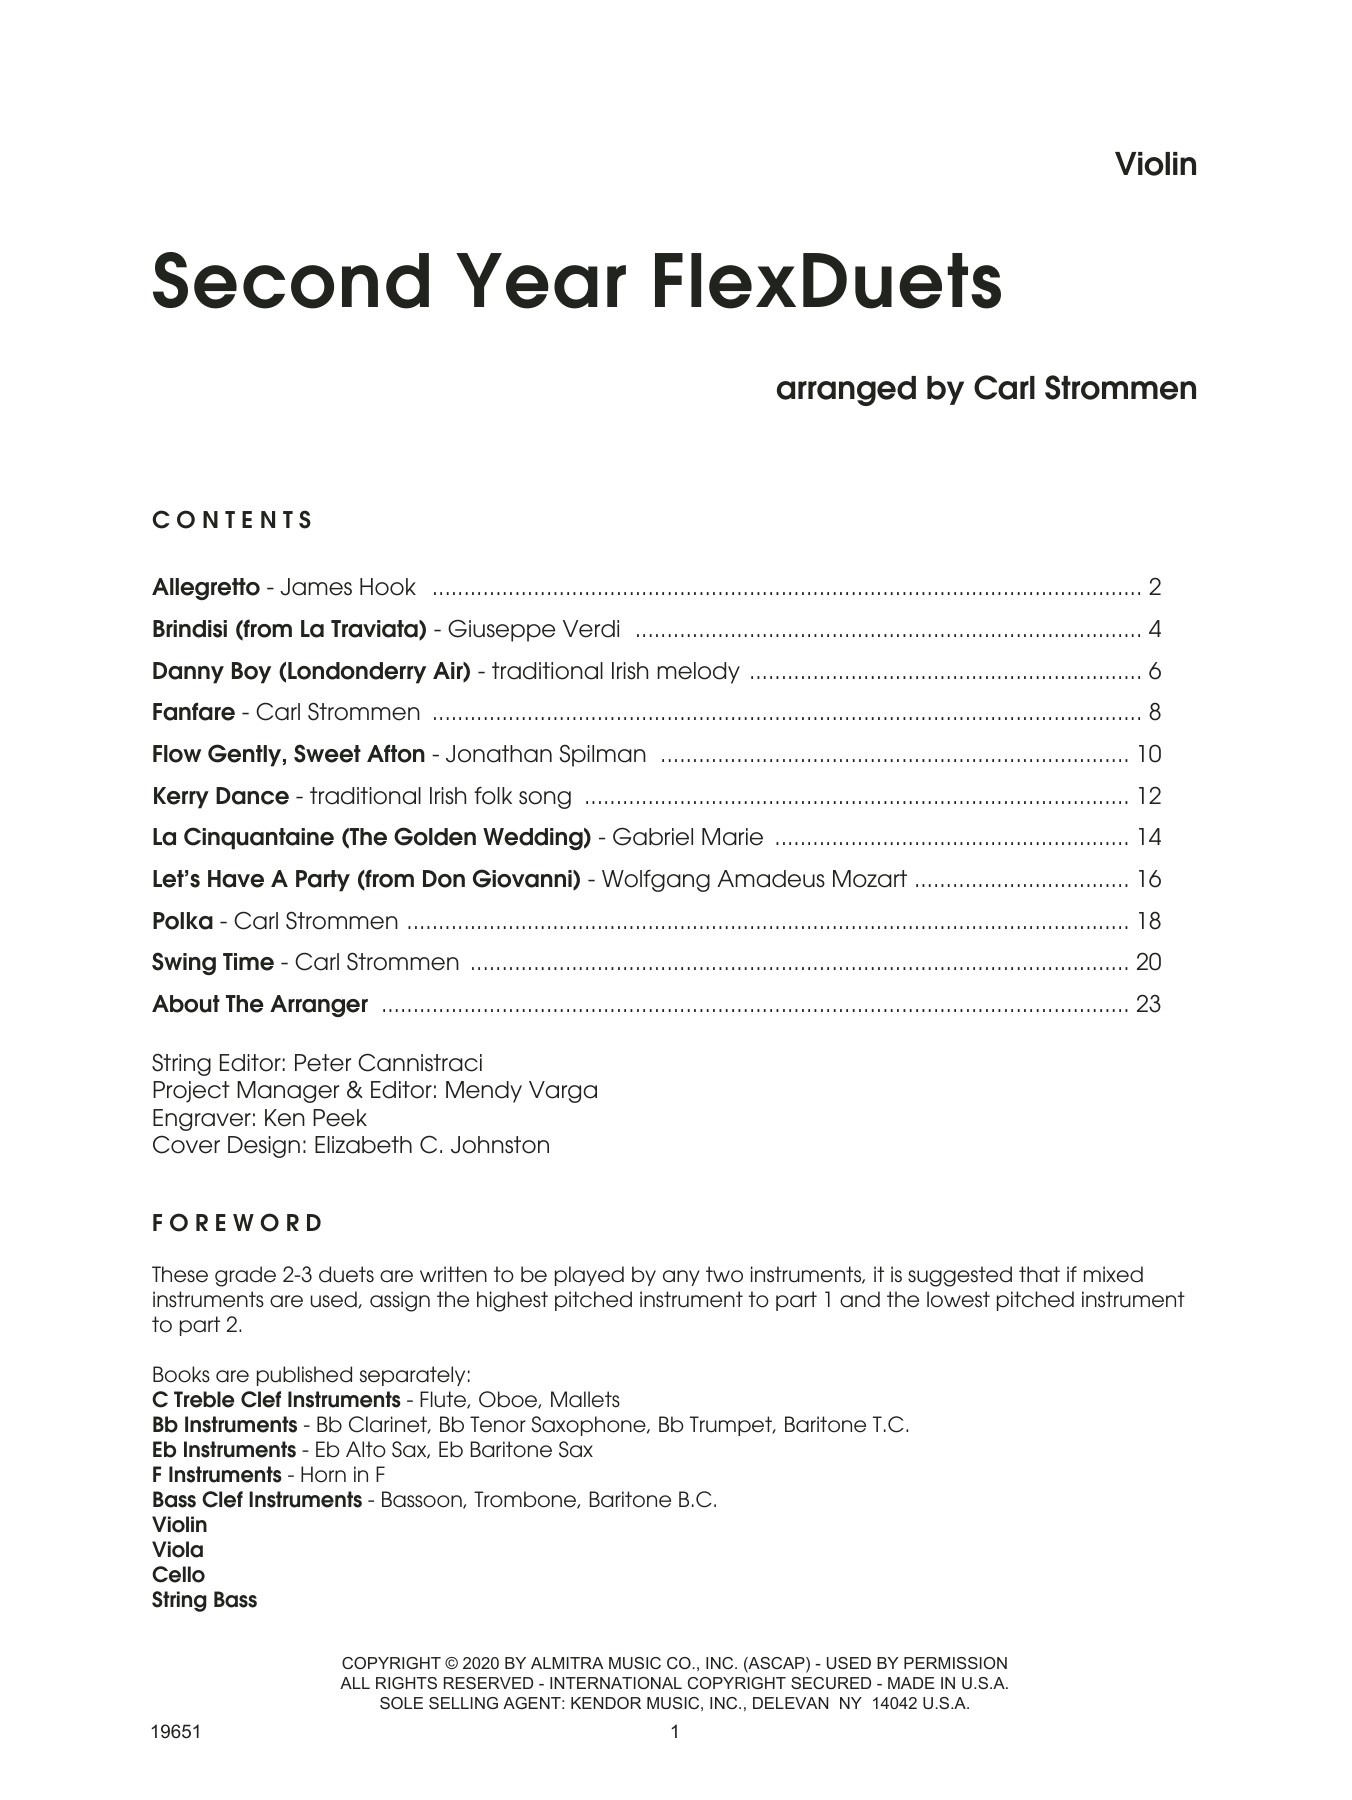 Second Year FlexDuets - Violin (String Ensemble) von Carl Strommen